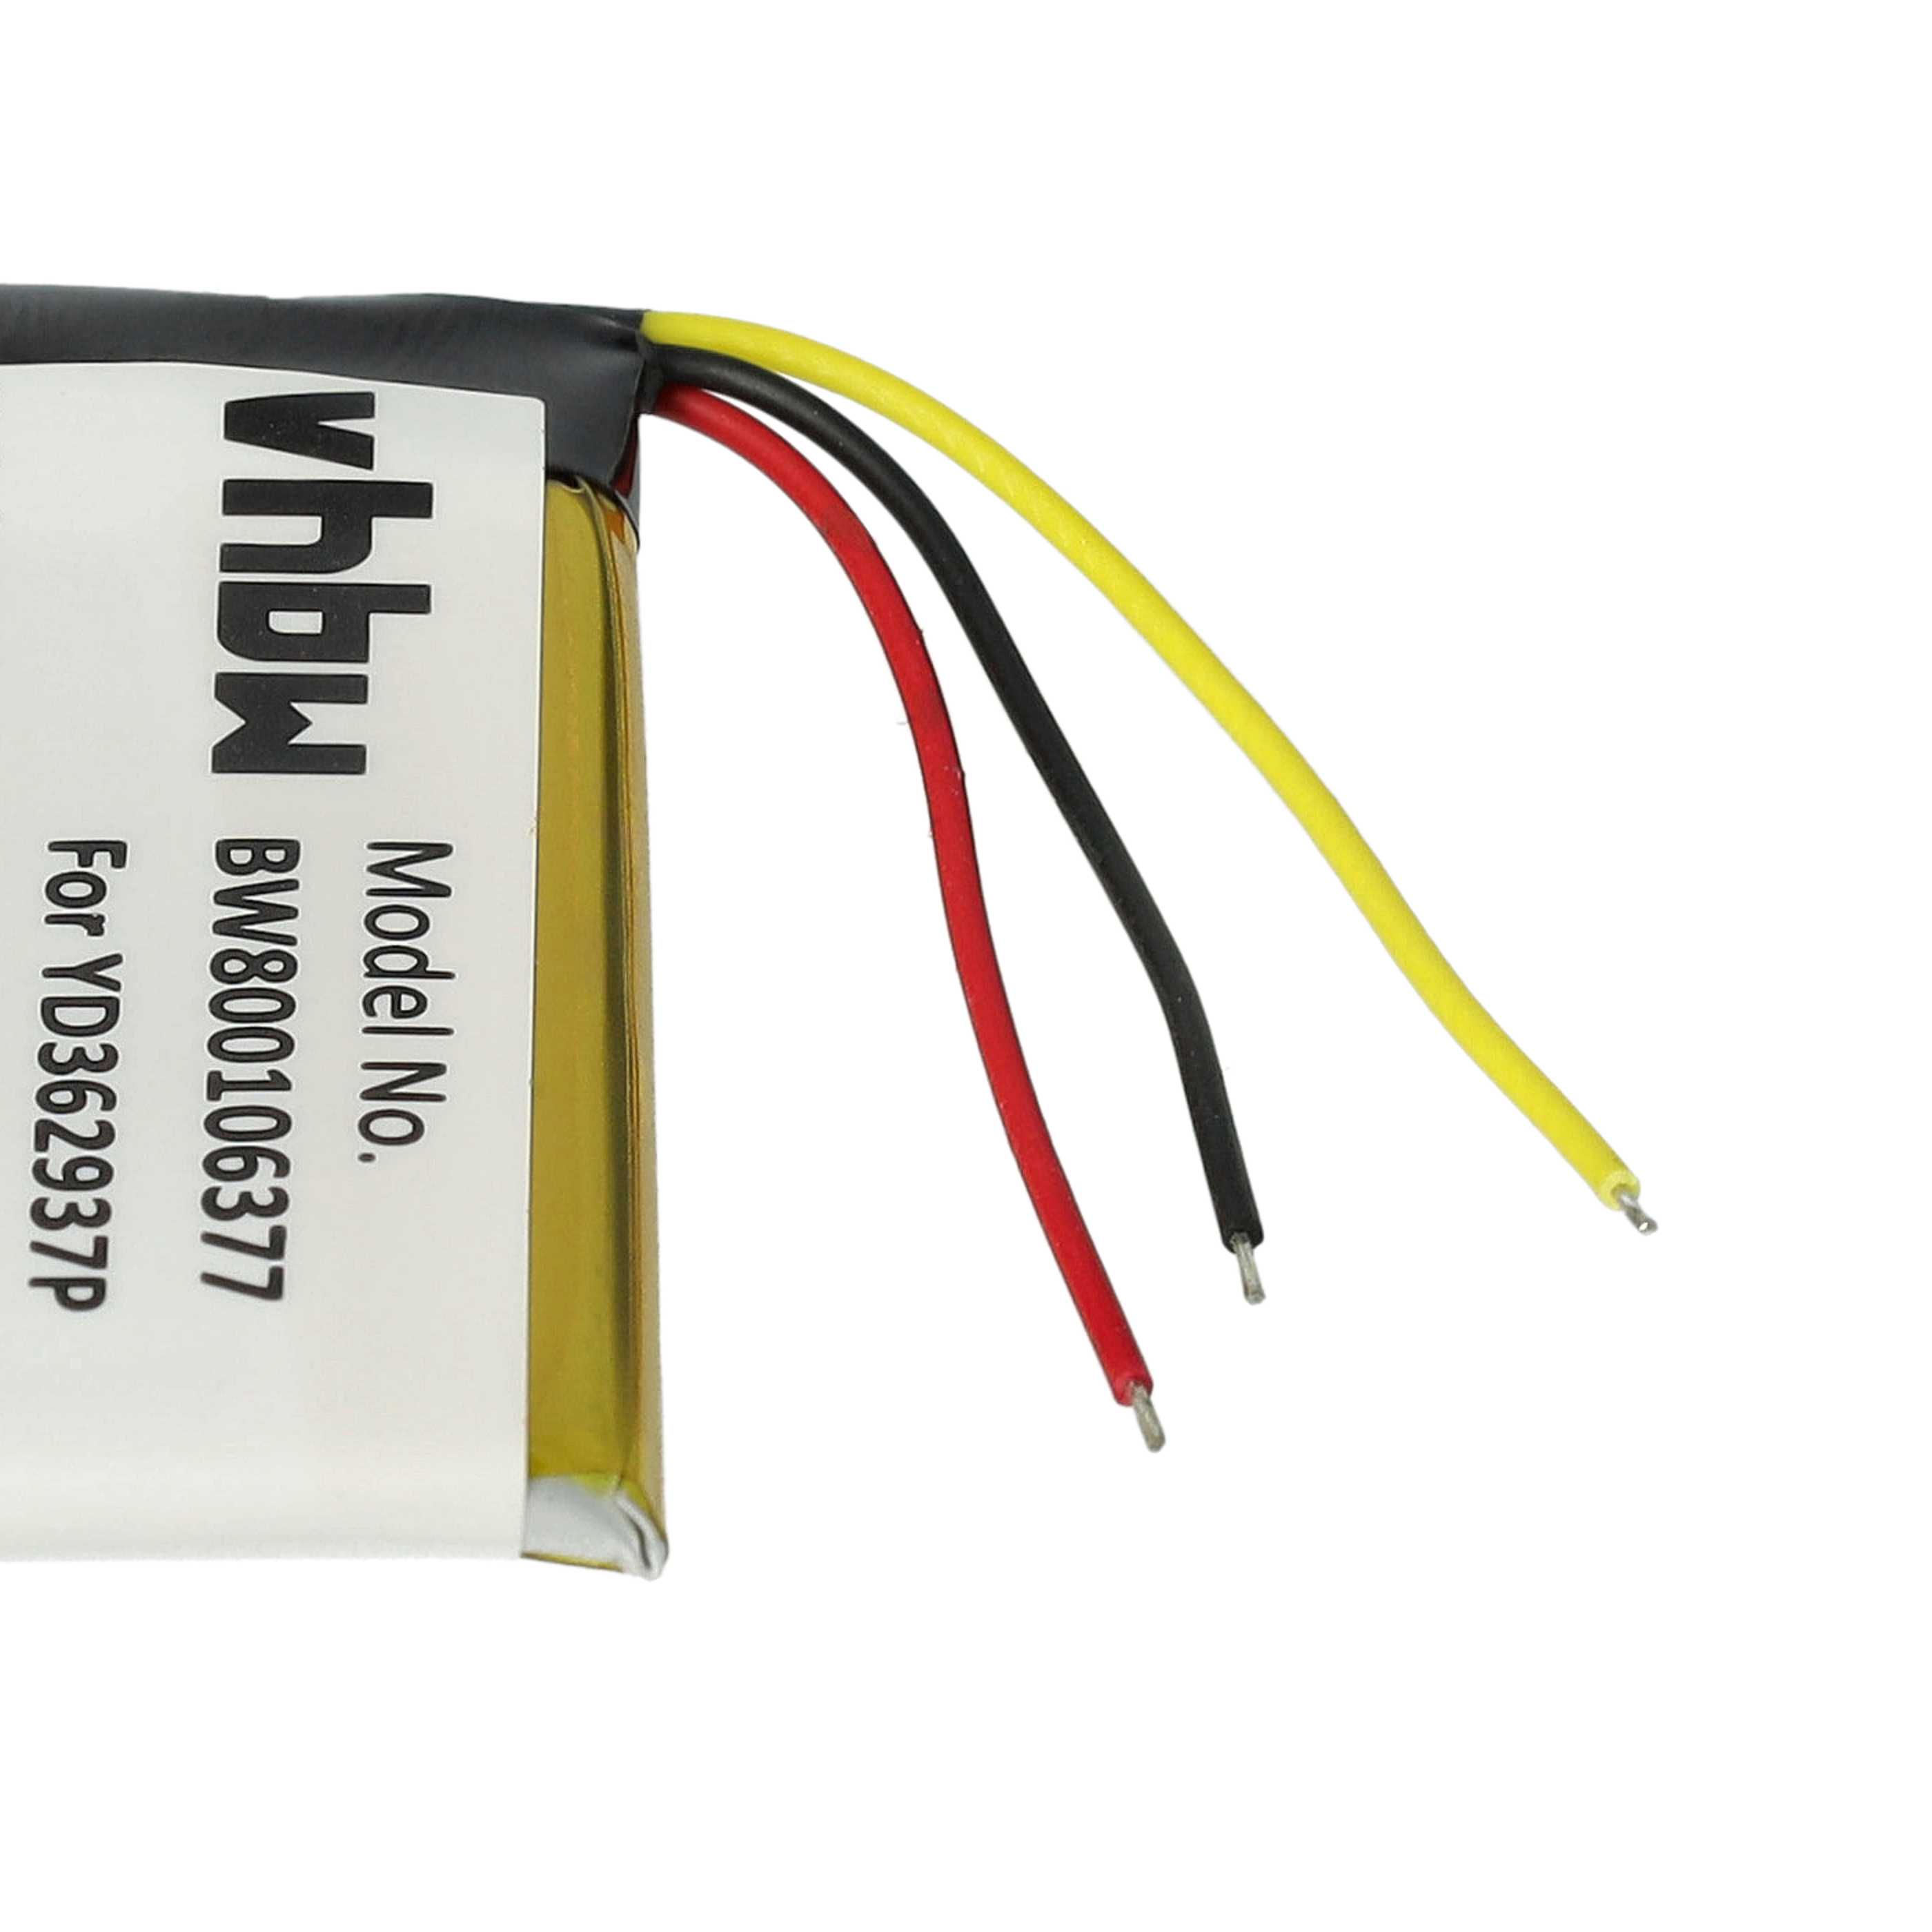 Batteria per telecomando remote controller sostituisce GoPro YD362937P GoPro - 350mAh 3,7V Li-Poly